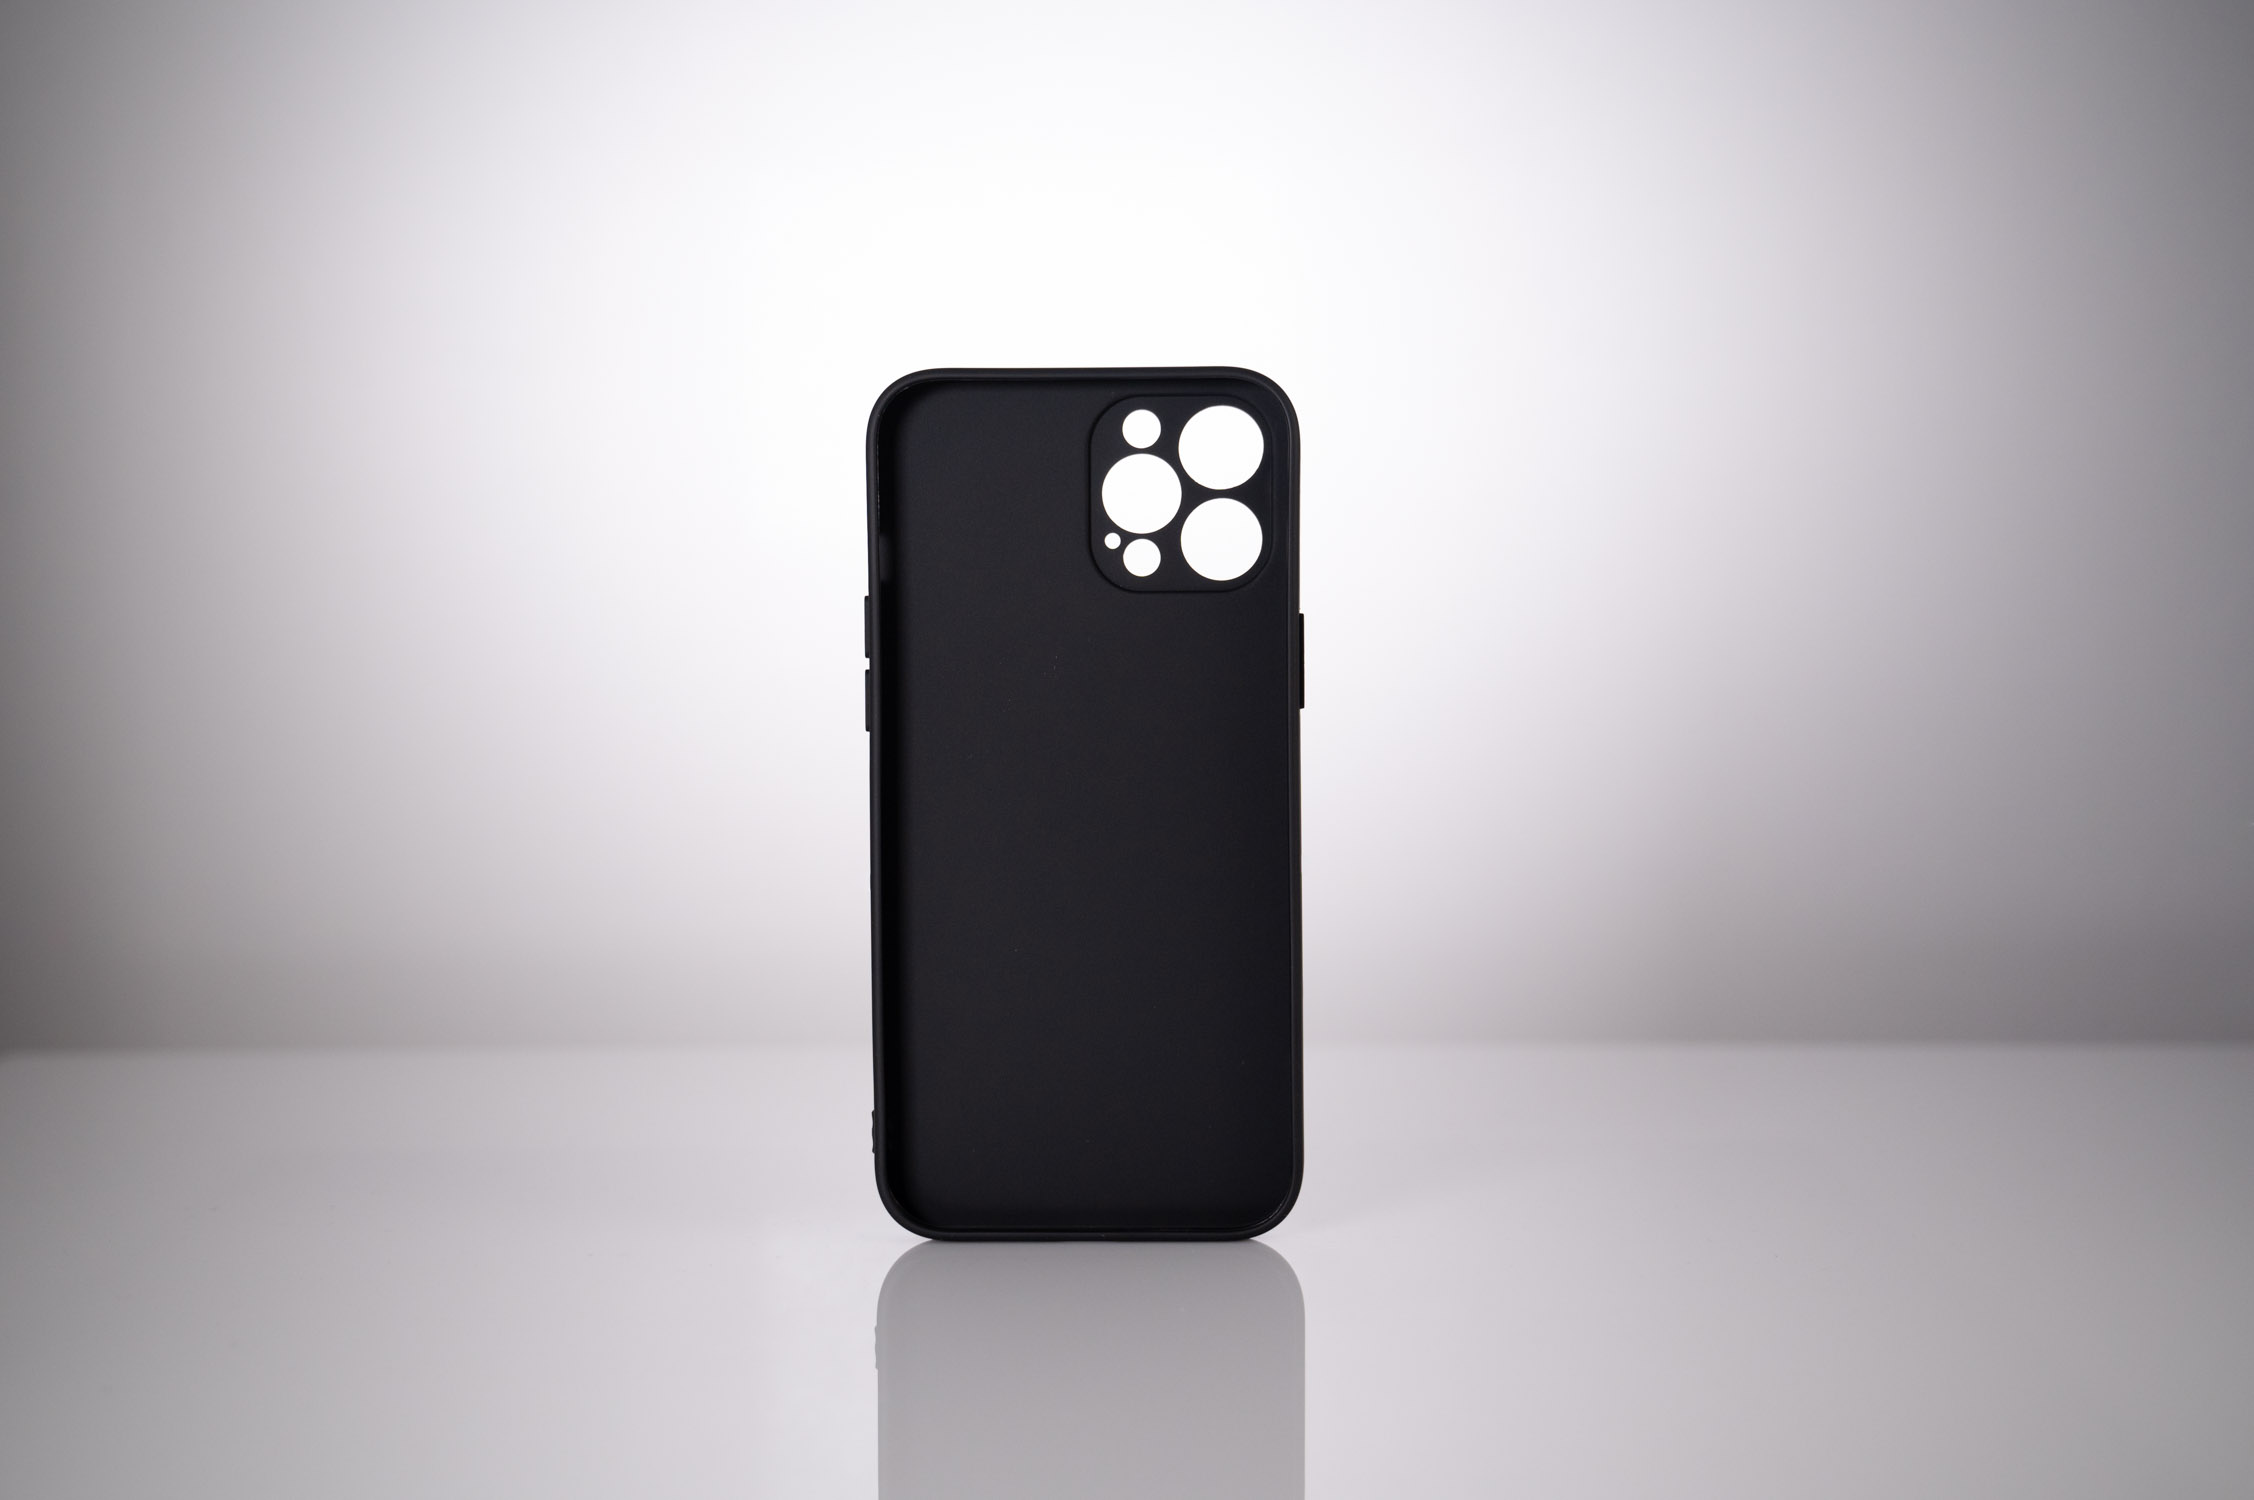 HUSA SMARTPHONE Spacer pentru Iphone 12 Pro Max, grosime 1.5mm, material flexibil TPU, negru "SPPC-AP-IP12PM-TPU" thumb